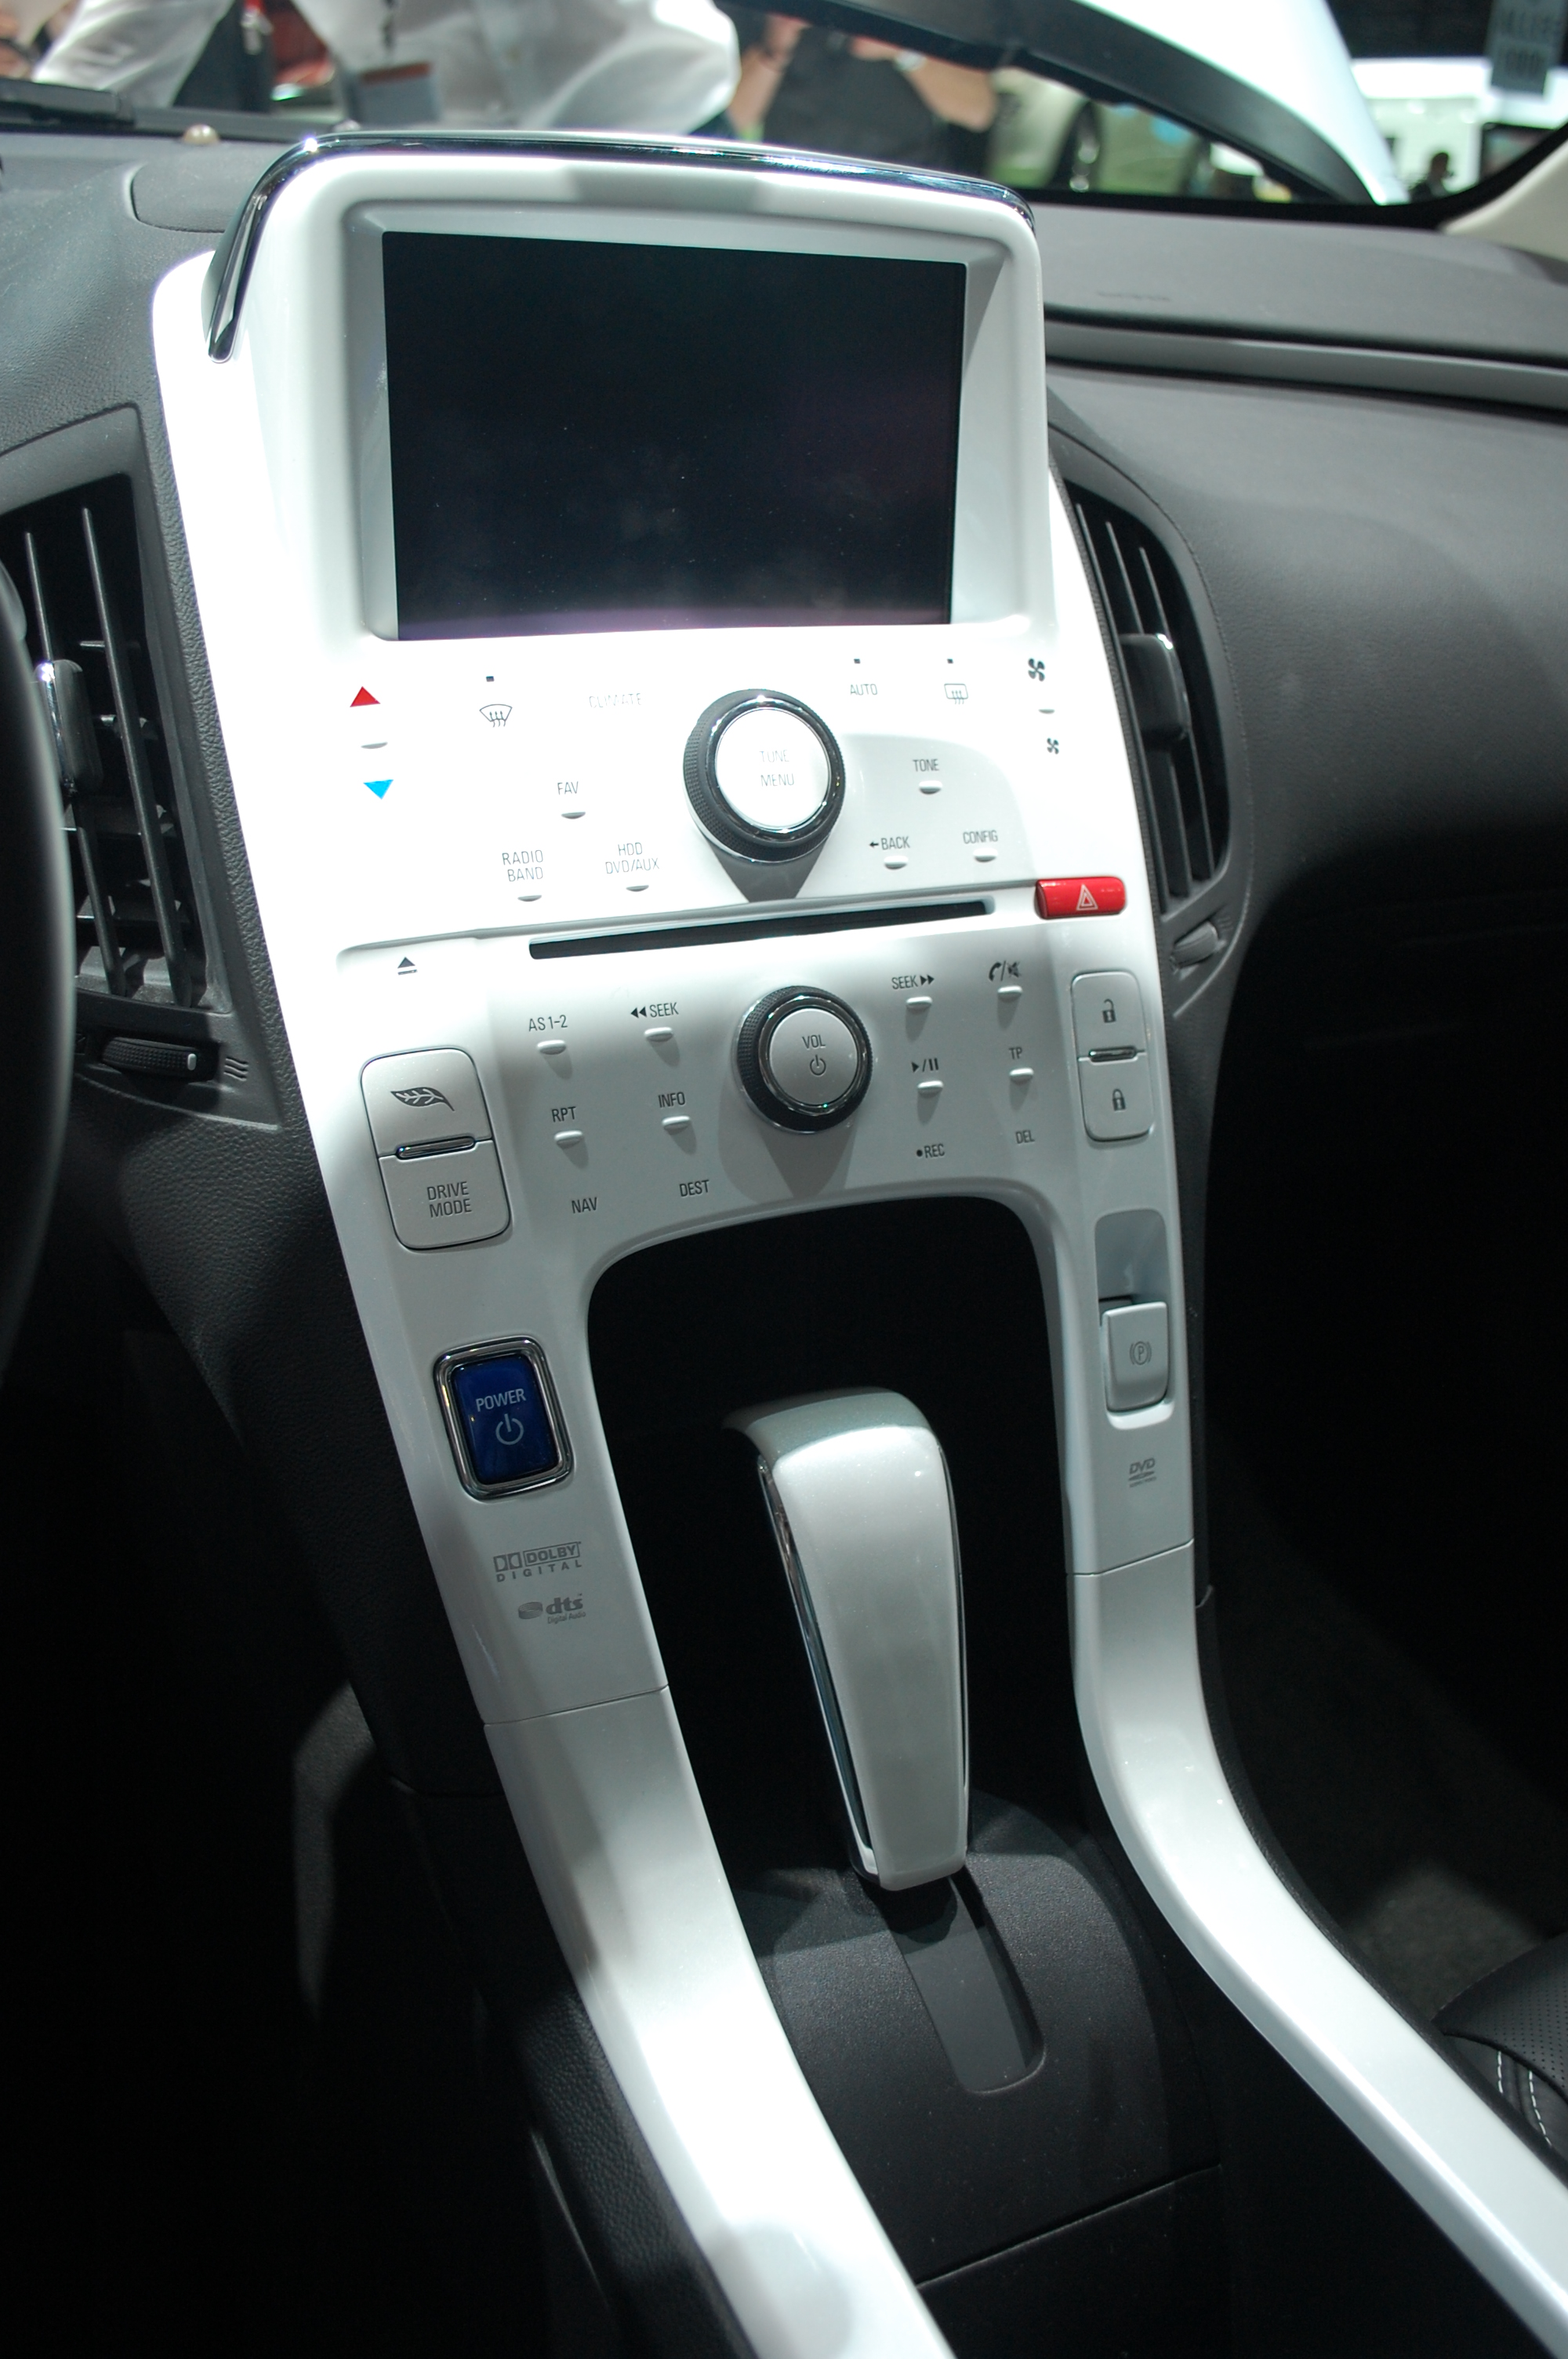 2011 Chevrolet Volt dashboard